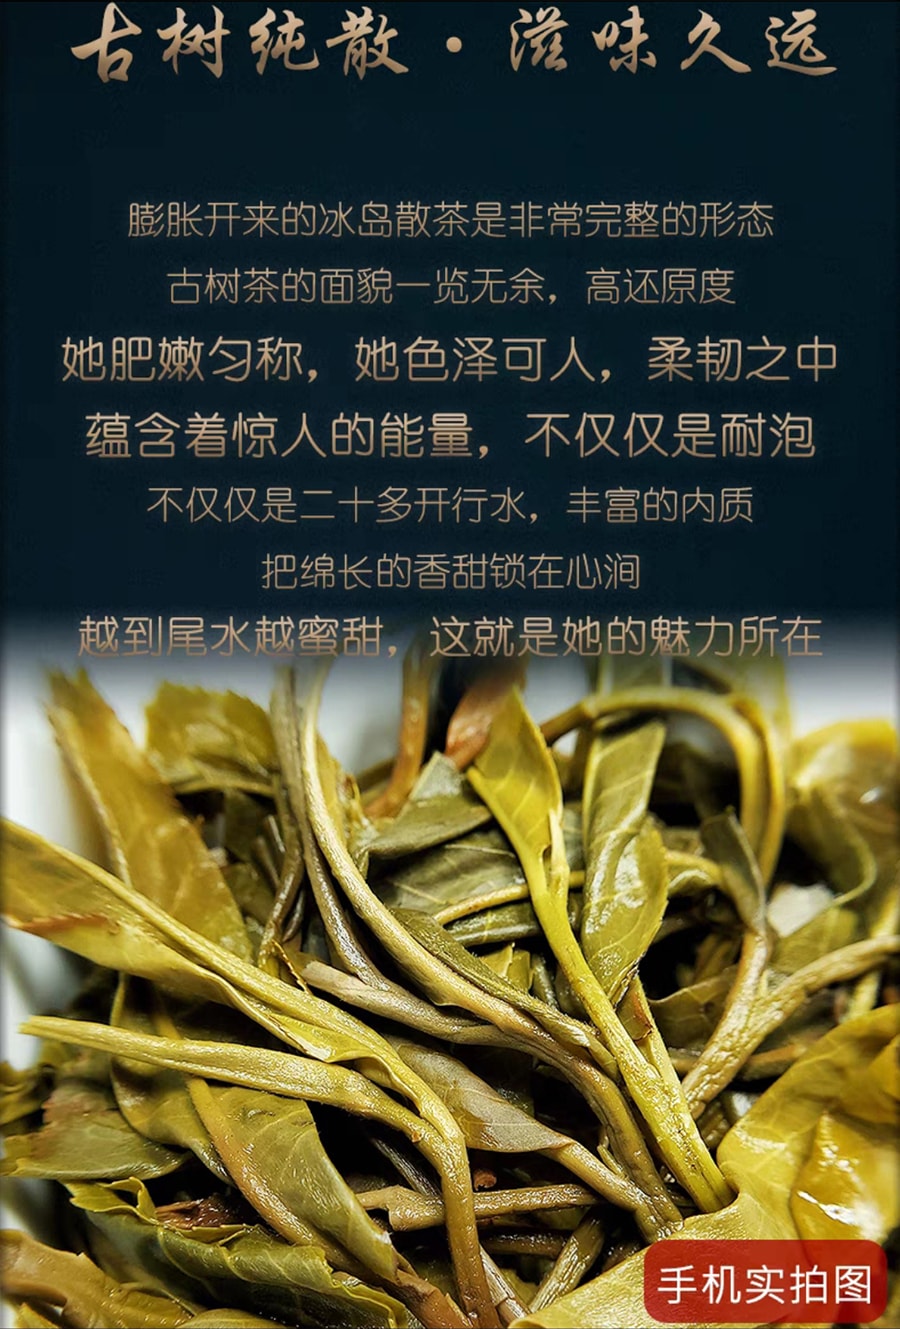 中國 甘溫 雲南臨滄勐庫冰島普洱茶茶餅 古樹生茶 200克